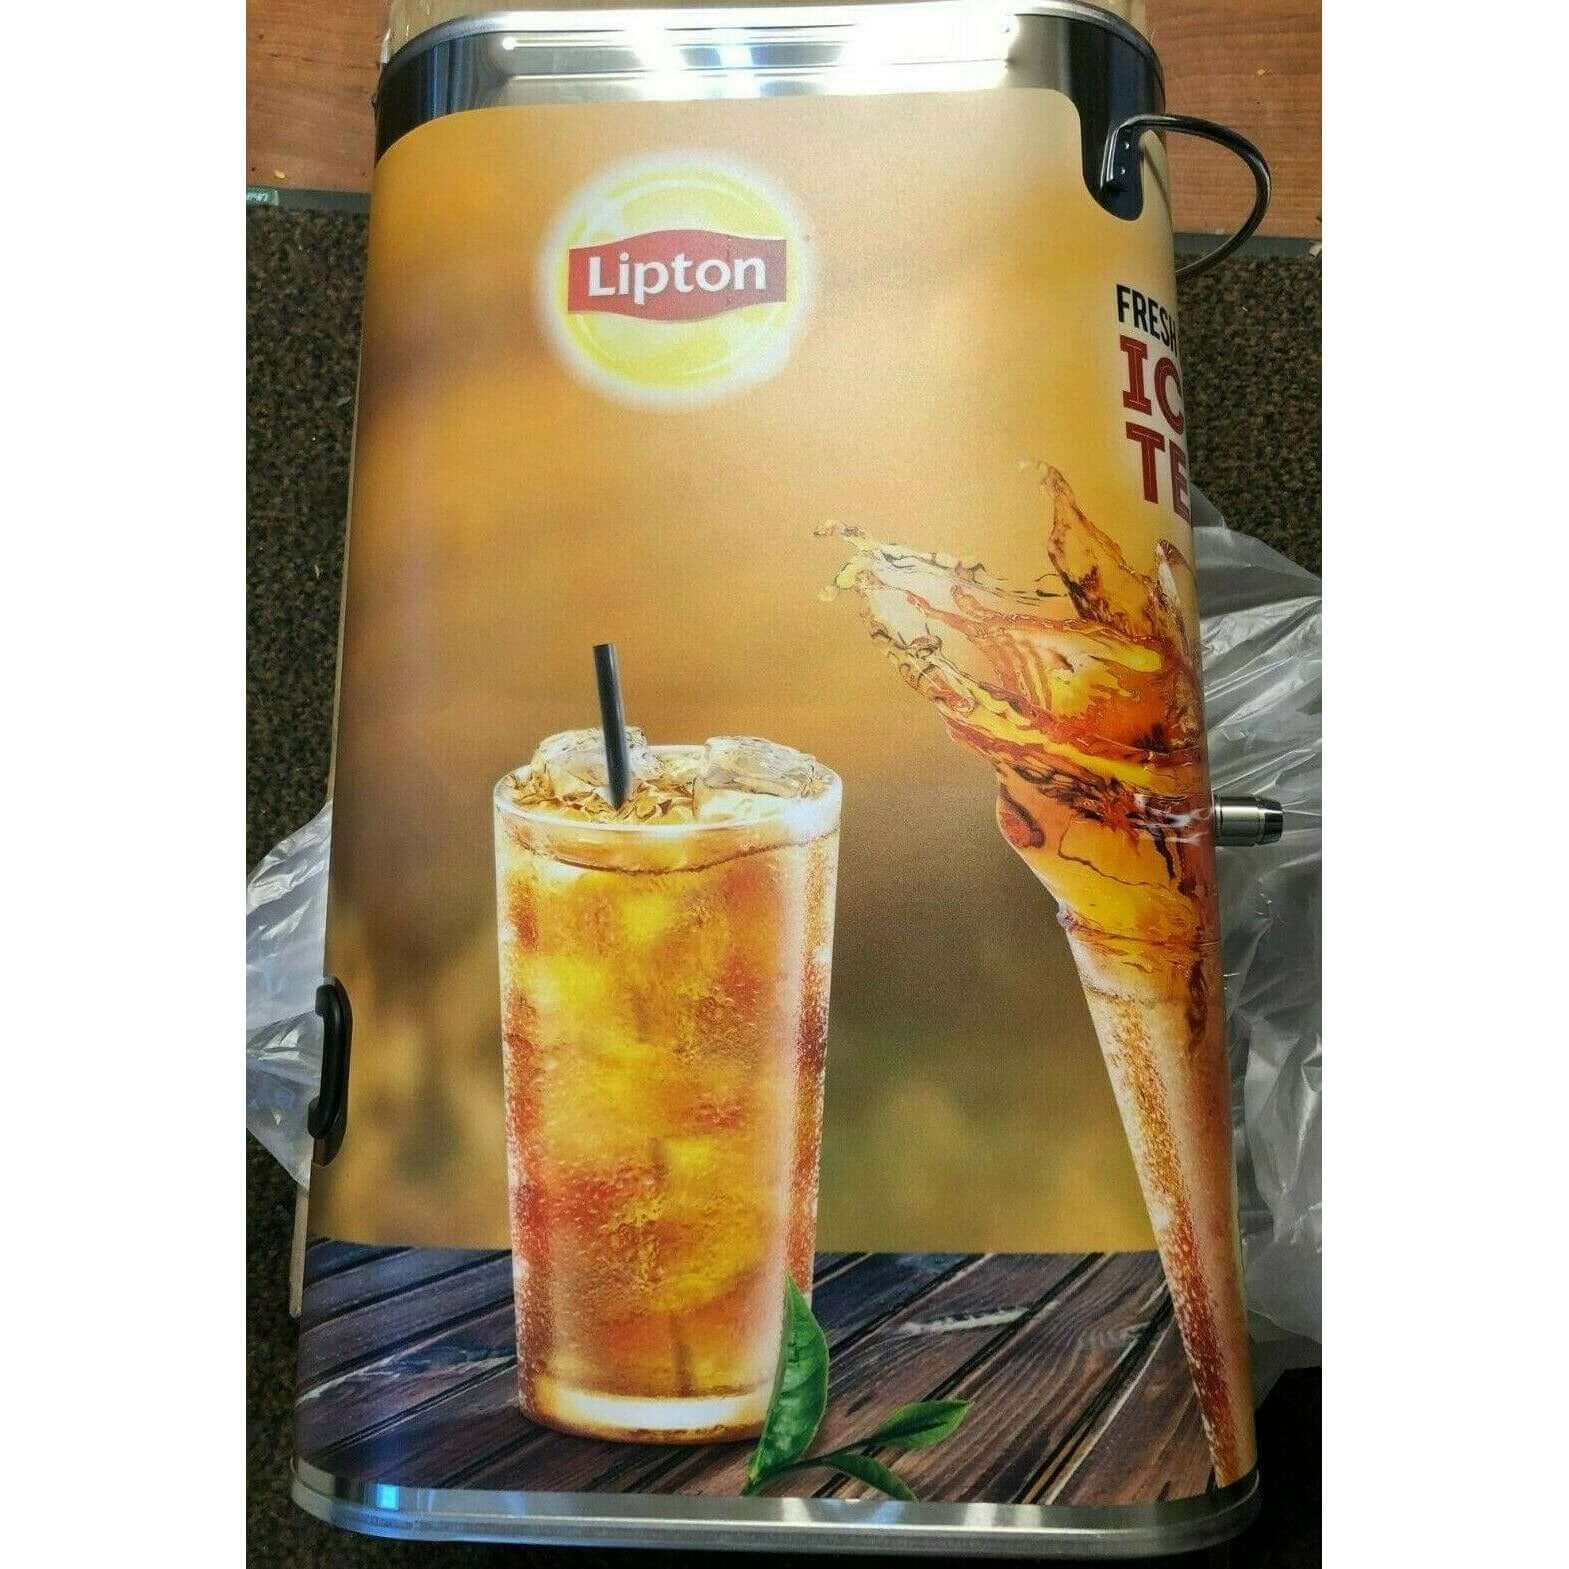 Bunn TDO-N-3.5 Narrow Iced Tea Dispenser - 3.5 Gallon